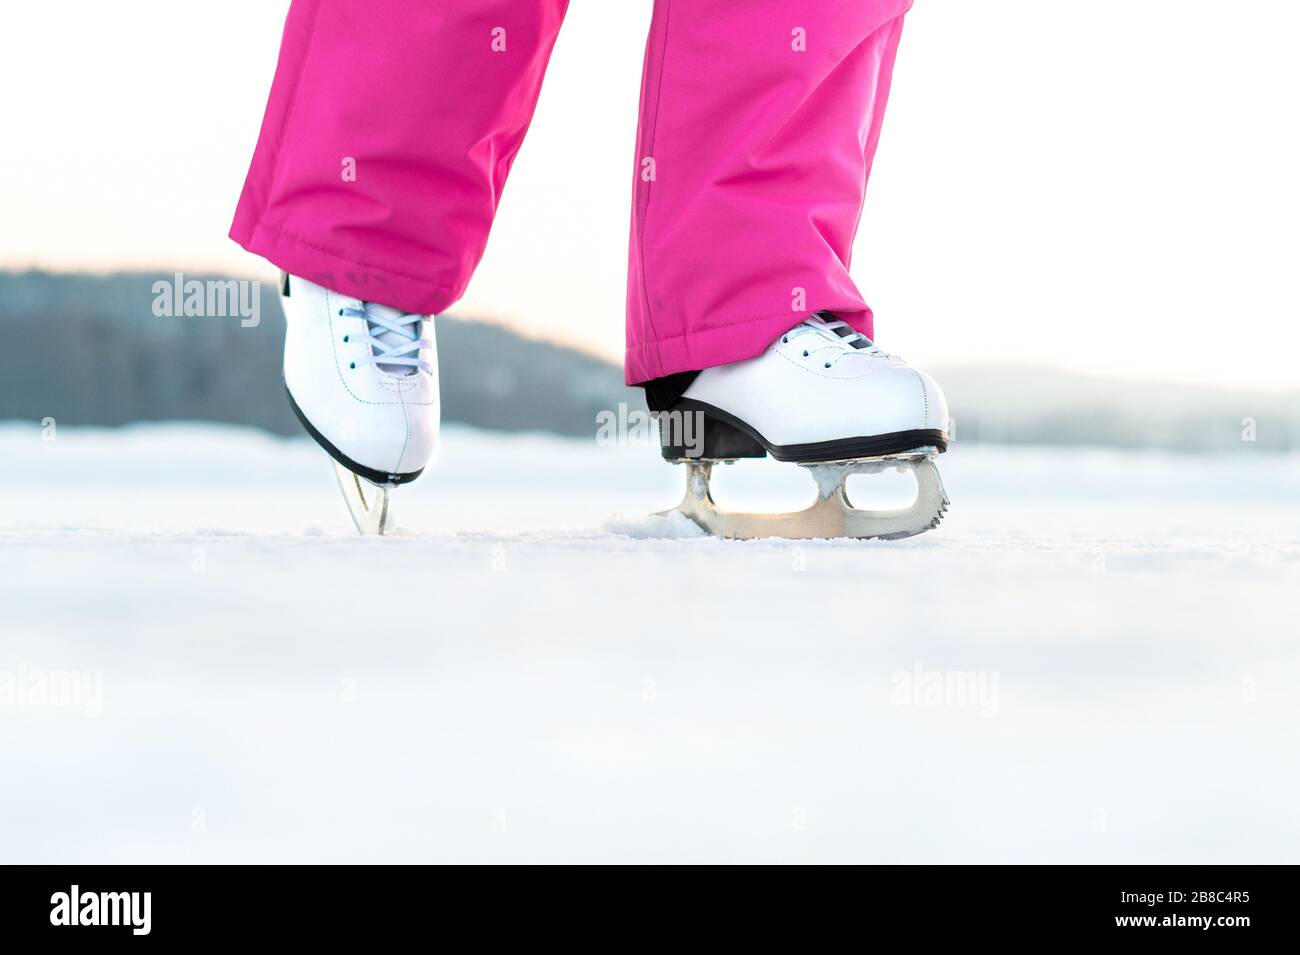 Ragazza pattinaggio su ghiaccio esterno. Pattinatore su lago ghiacciato o stagno. Giovane donna che si sta iceskating. Figura esercizio di pattinaggio o di formazione. Divertente attività invernale in inverno. Foto Stock